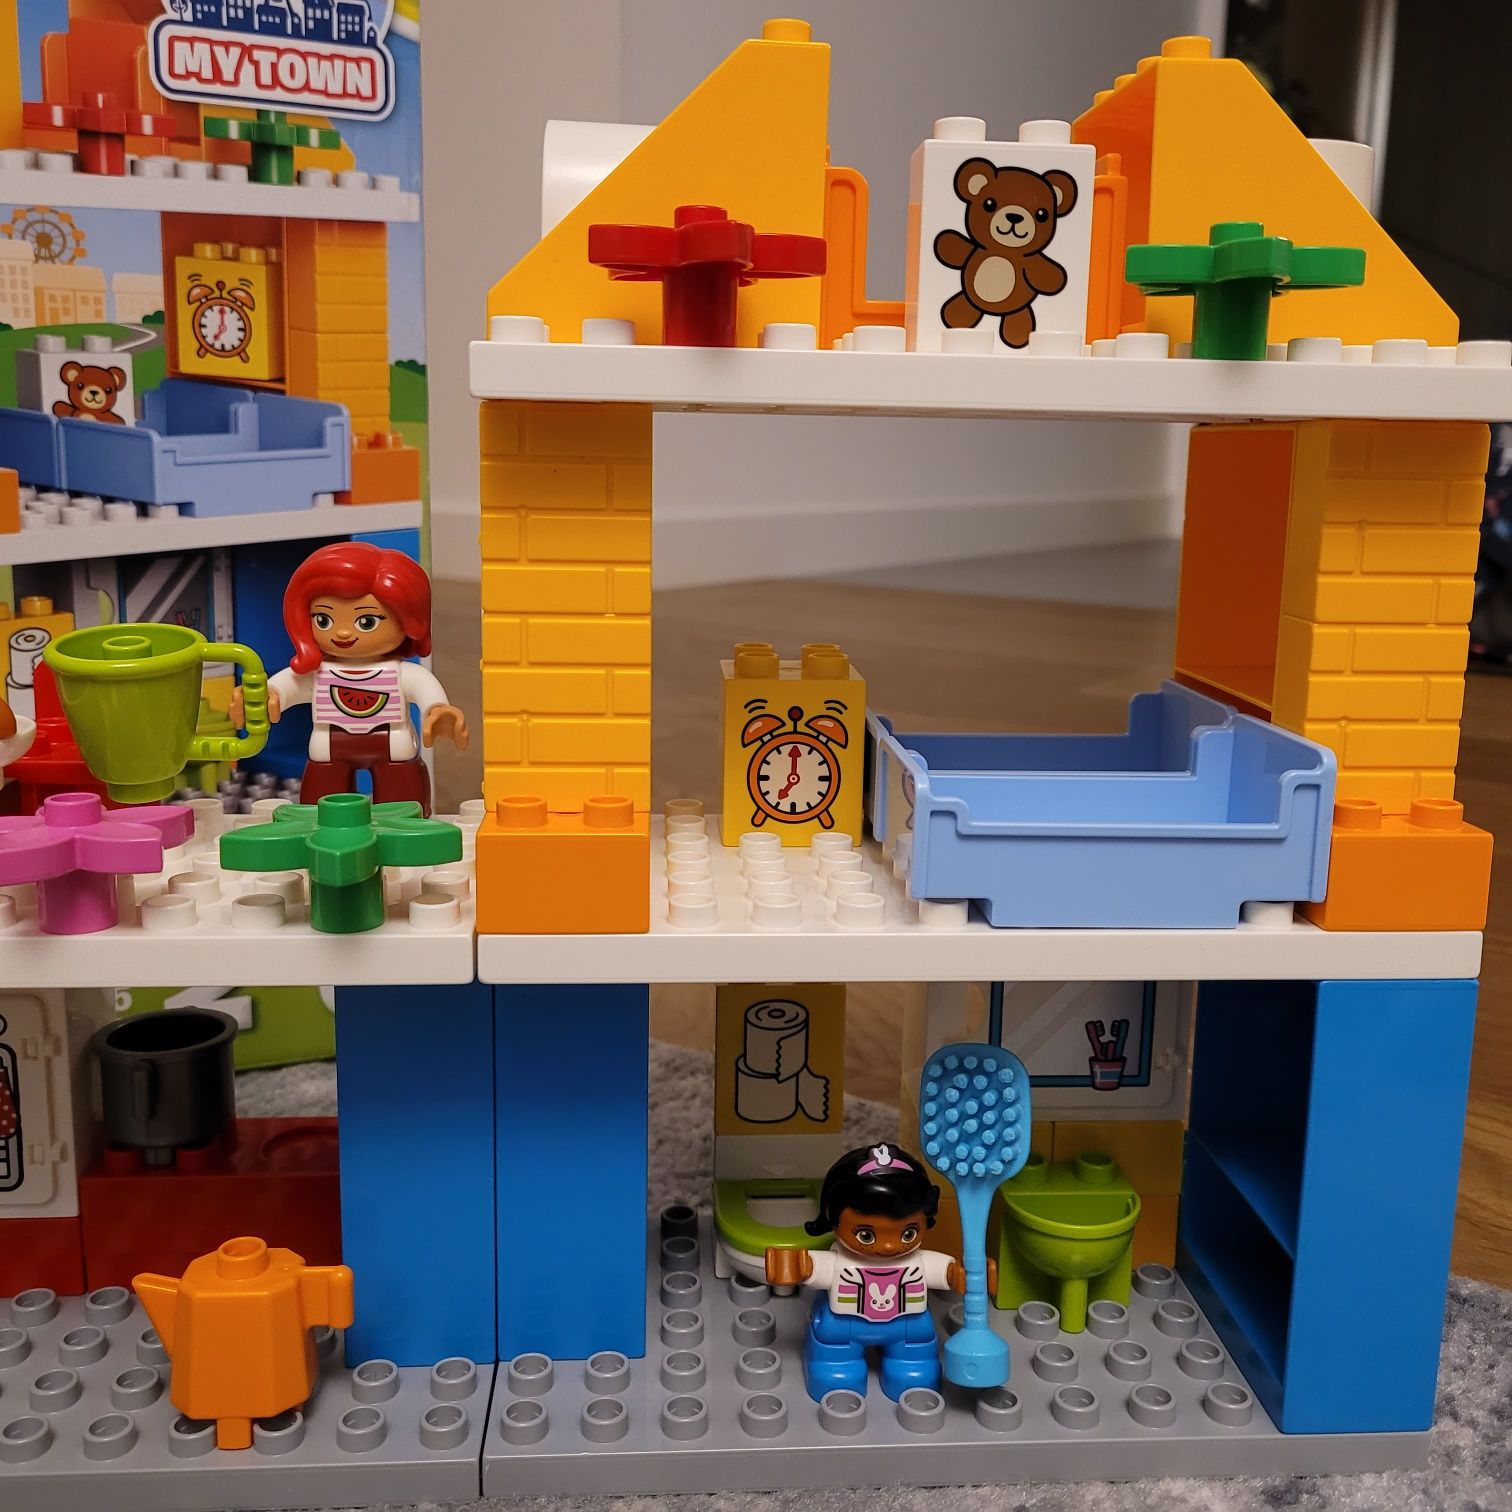 Lego Duplo Dom rodzinny 10834